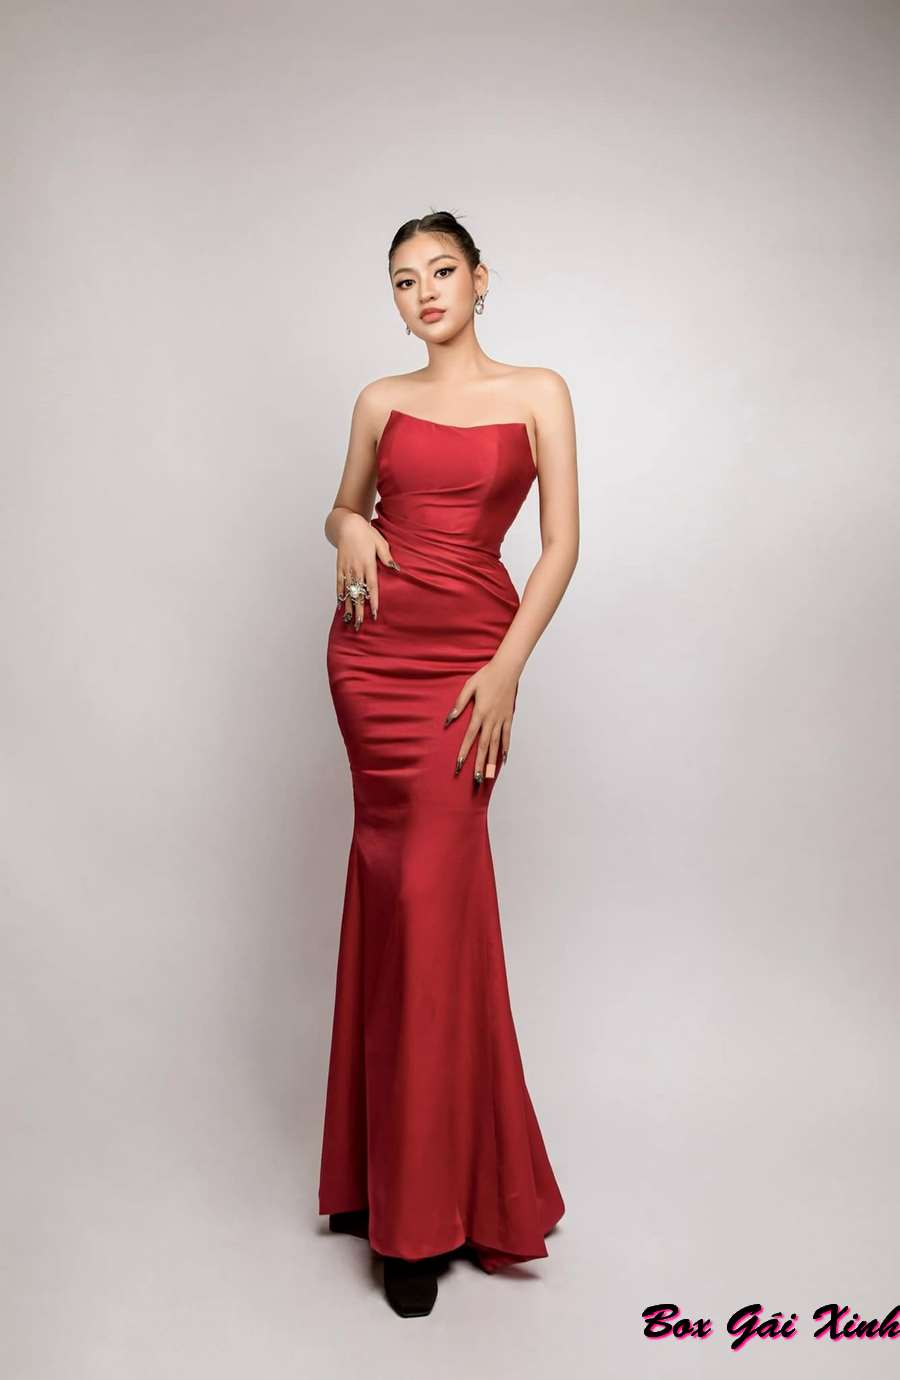 Hình ảnh Trần Thanh Tâm diện váy dạ hội xinh đẹp quyến rũ